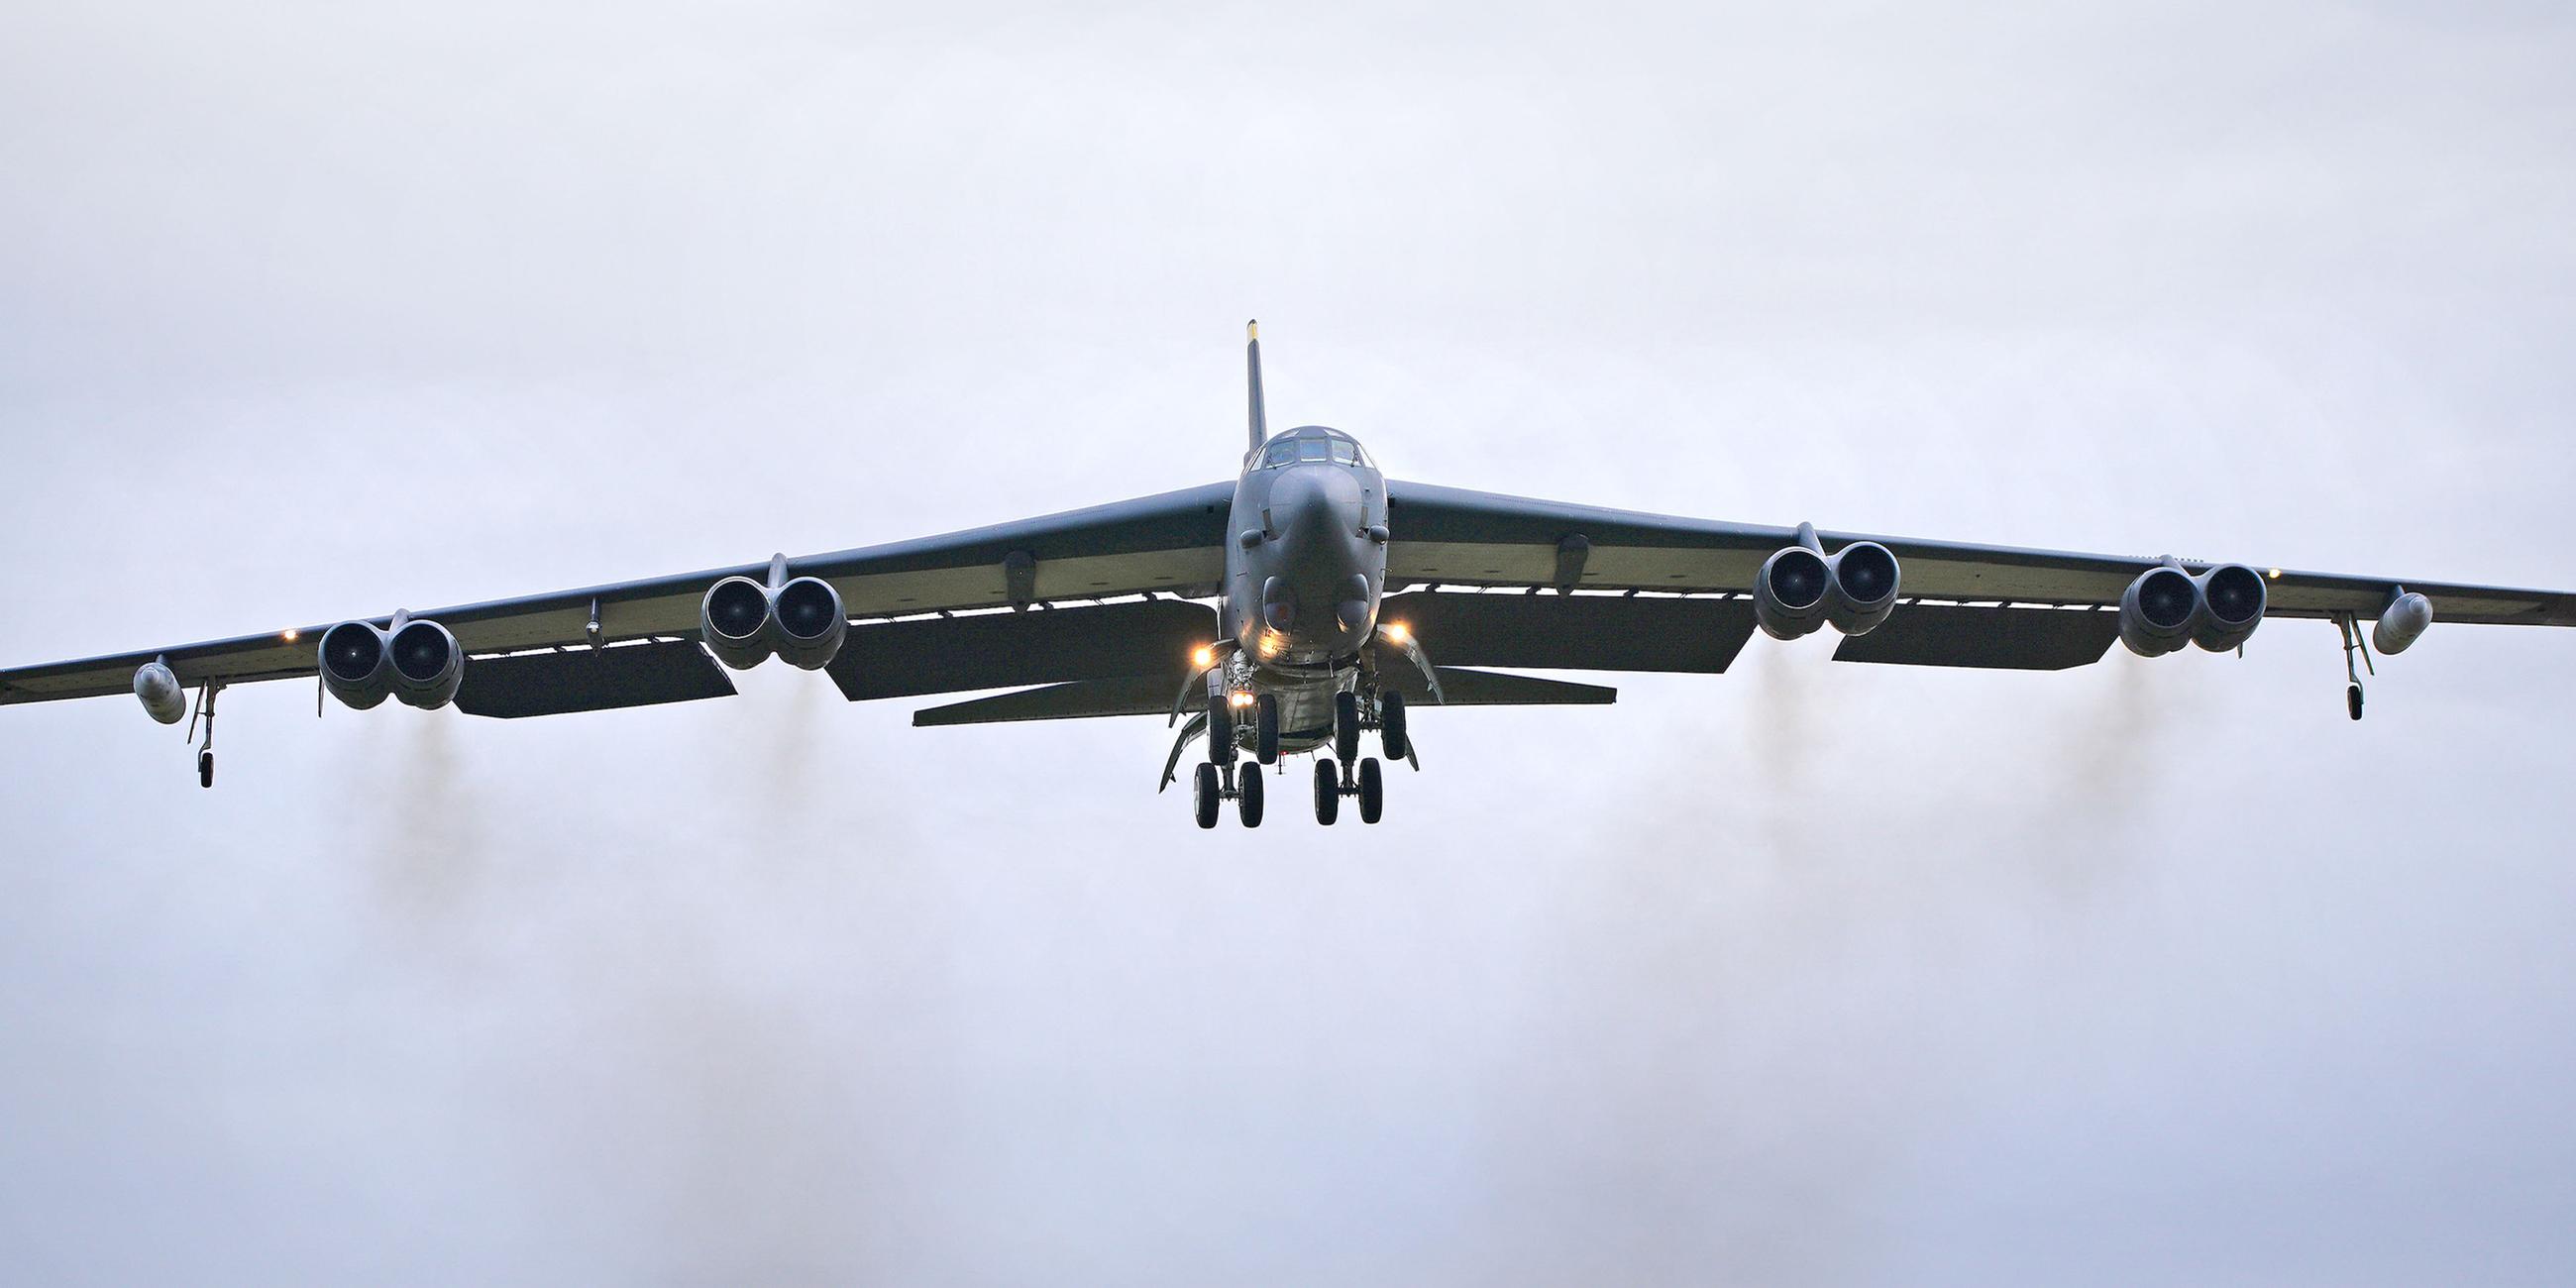 Archiv: Ein B52-Bomber der US Air Force landet auf dem Luftwaffenstützpunkt RAF Fairford. (10.02.2022)